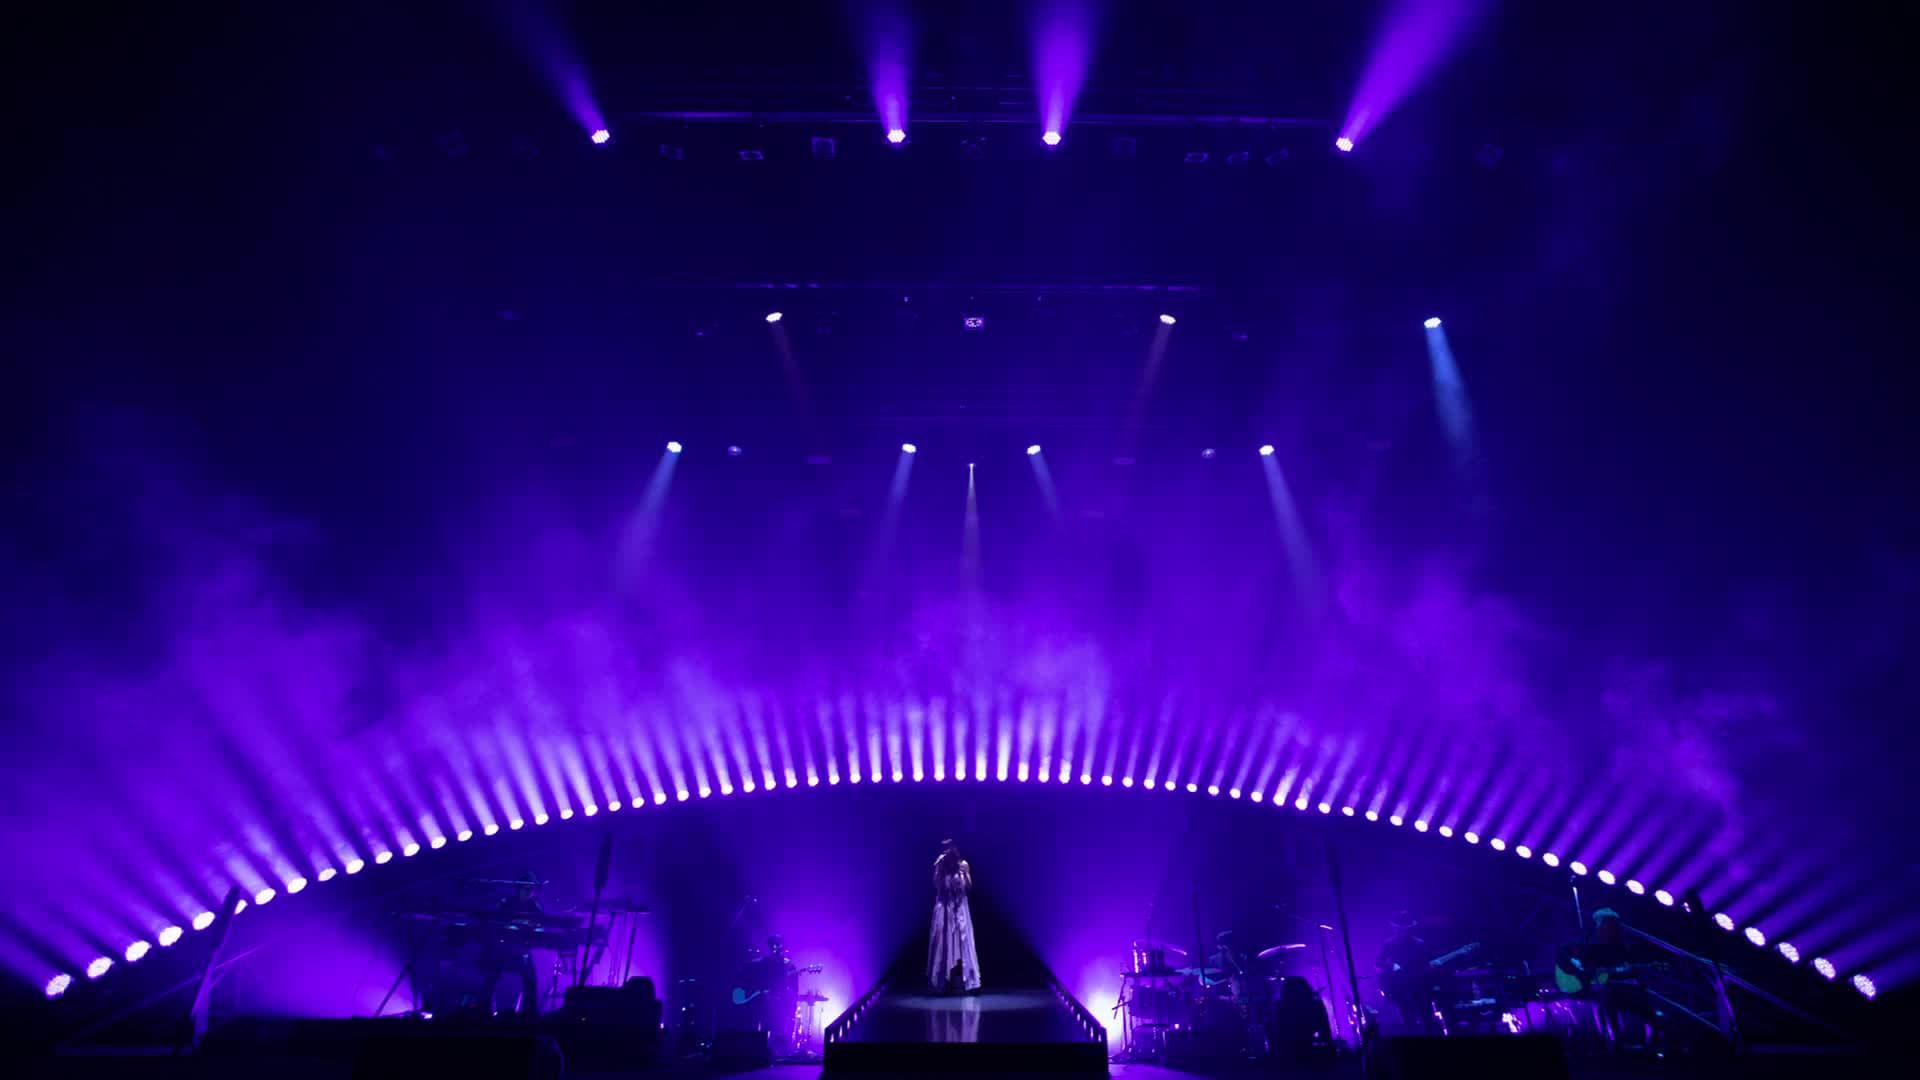 Aimer Hall Tour 19/20 “rouge de bleu” 東京公演 ～bleu de rouge～ backdrop